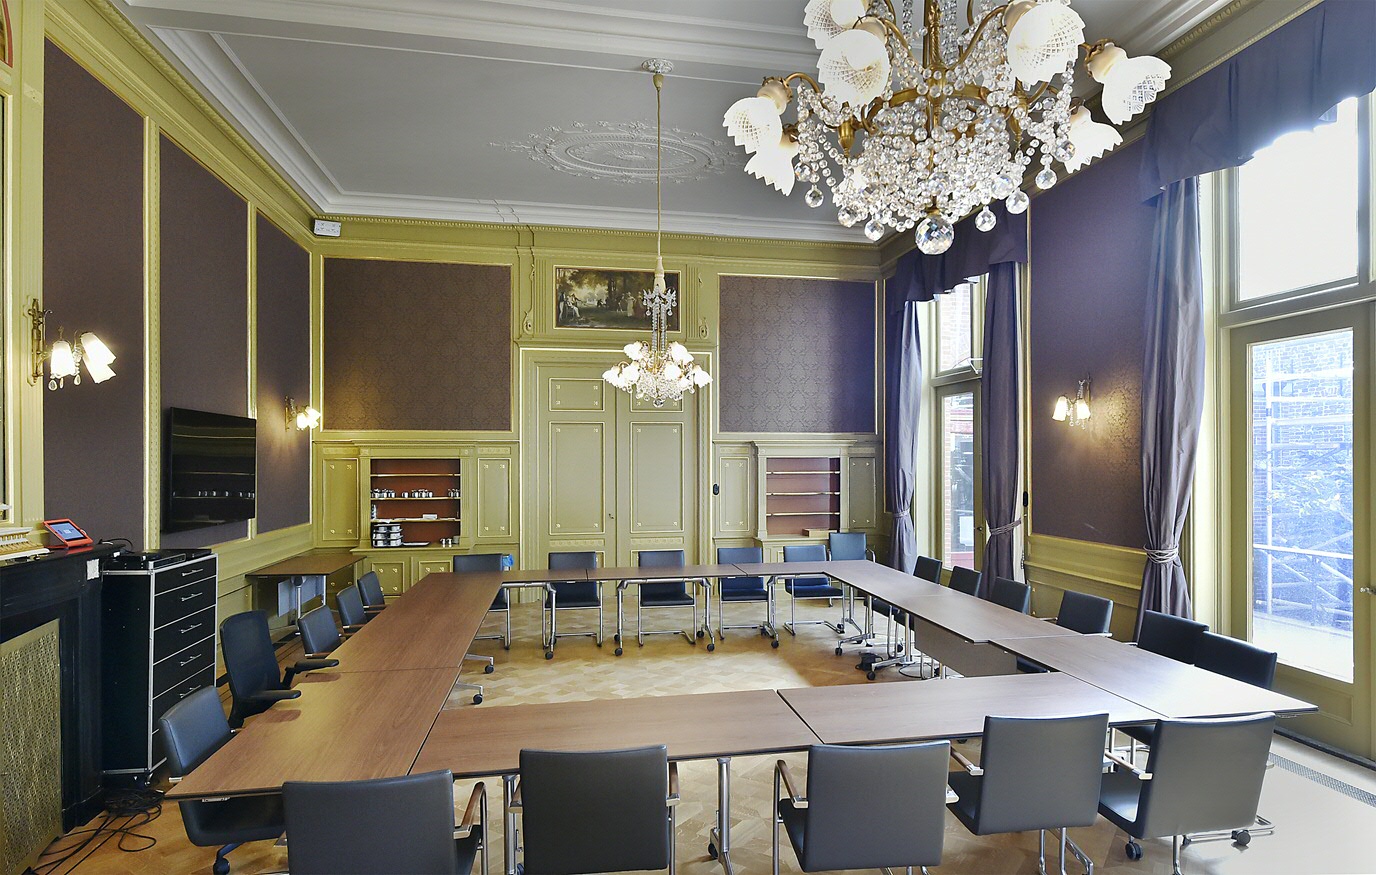 De gerestaureerde Grote Vergaderzaal, terug in de oude staat van balzaal.The restored Main Conference Room